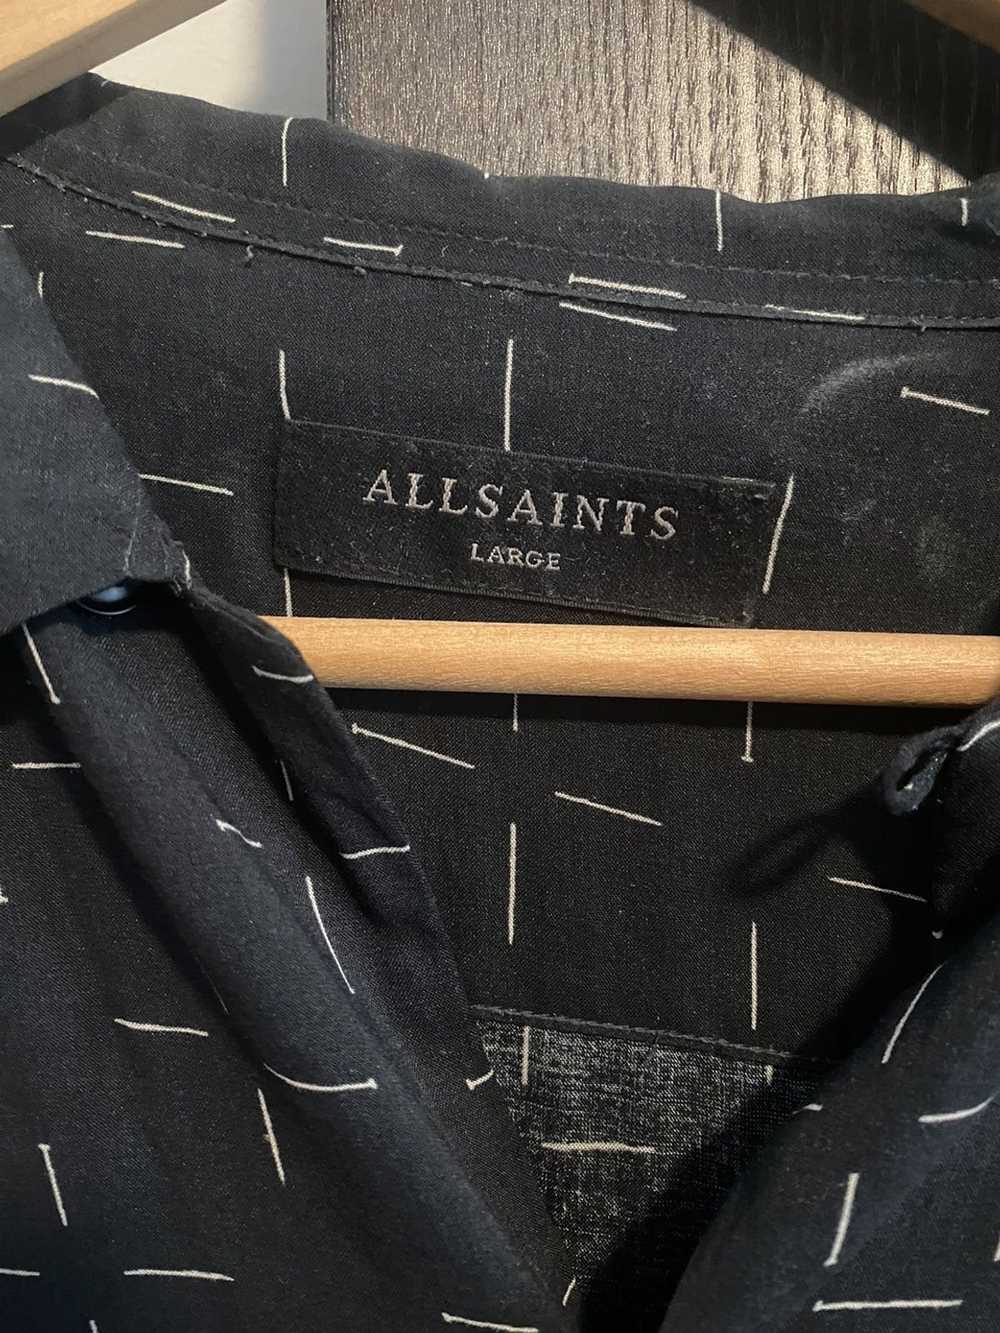 Allsaints Allsaints shirt - image 2